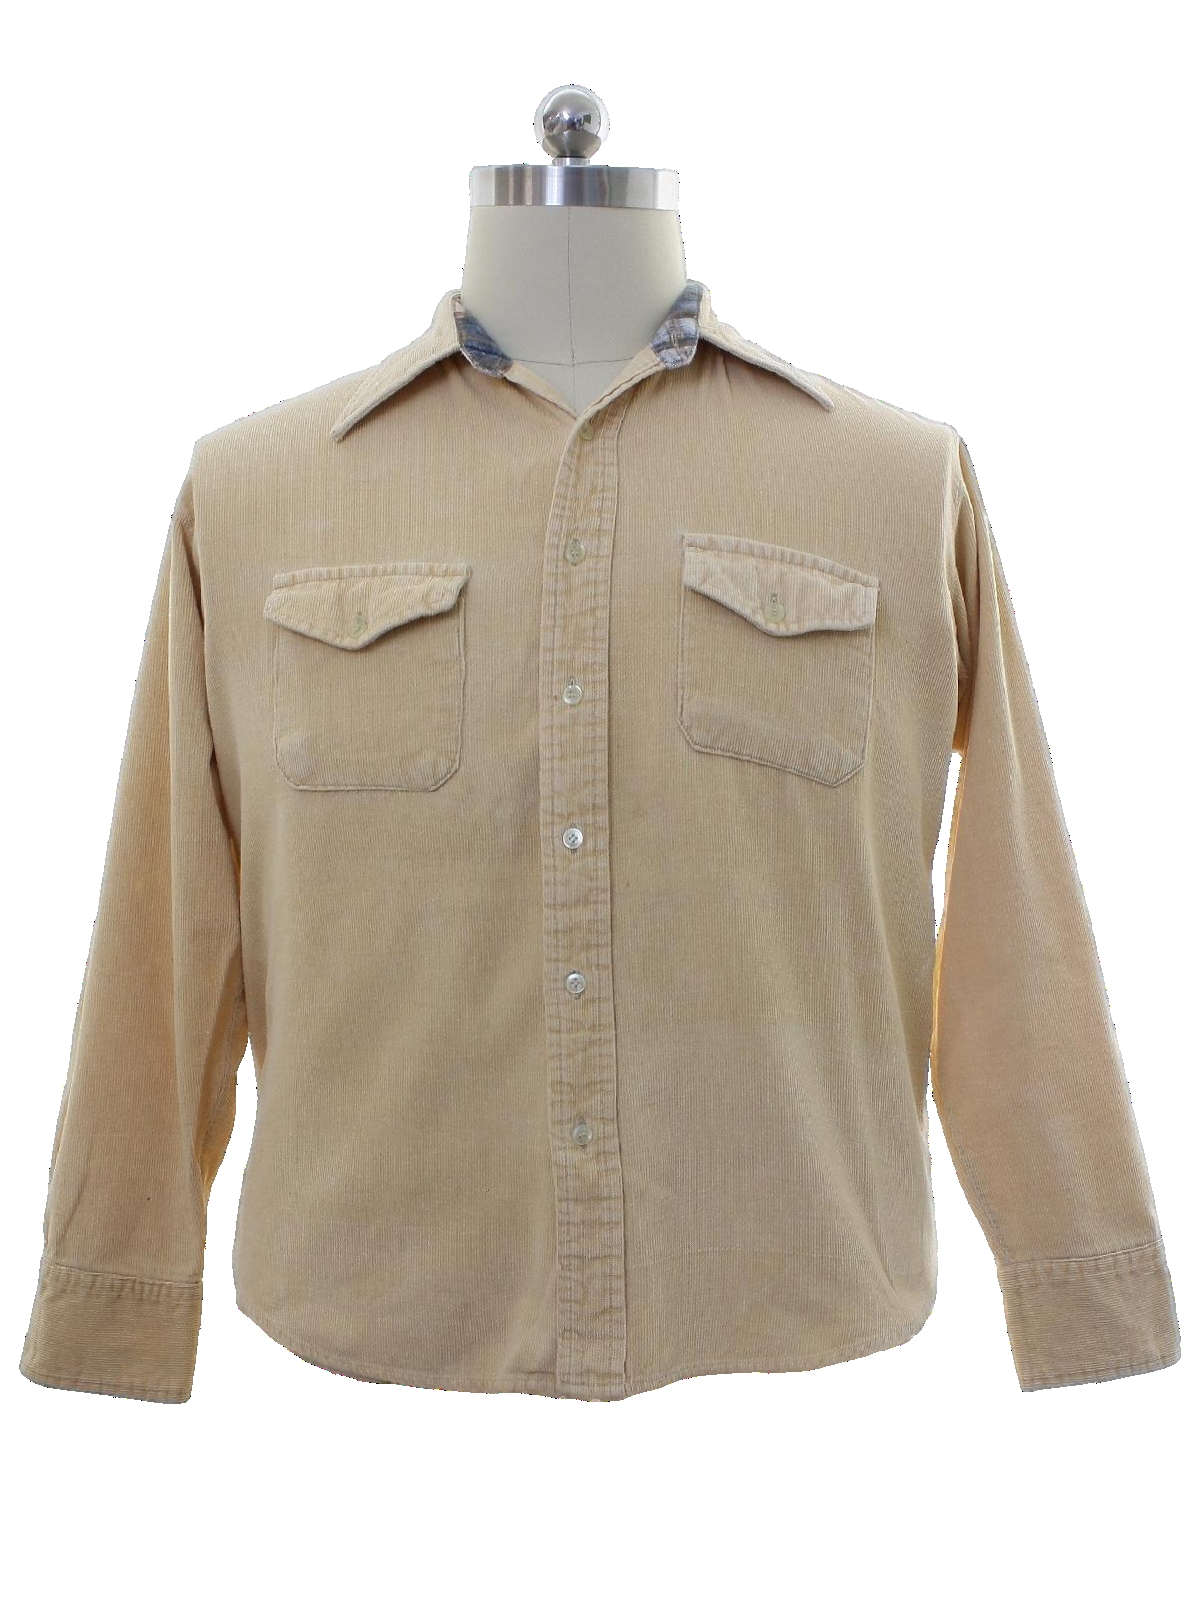 Retro 70s Shirt (Shillitos The Mens Shop) : 70s -Shillitos The Mens ...